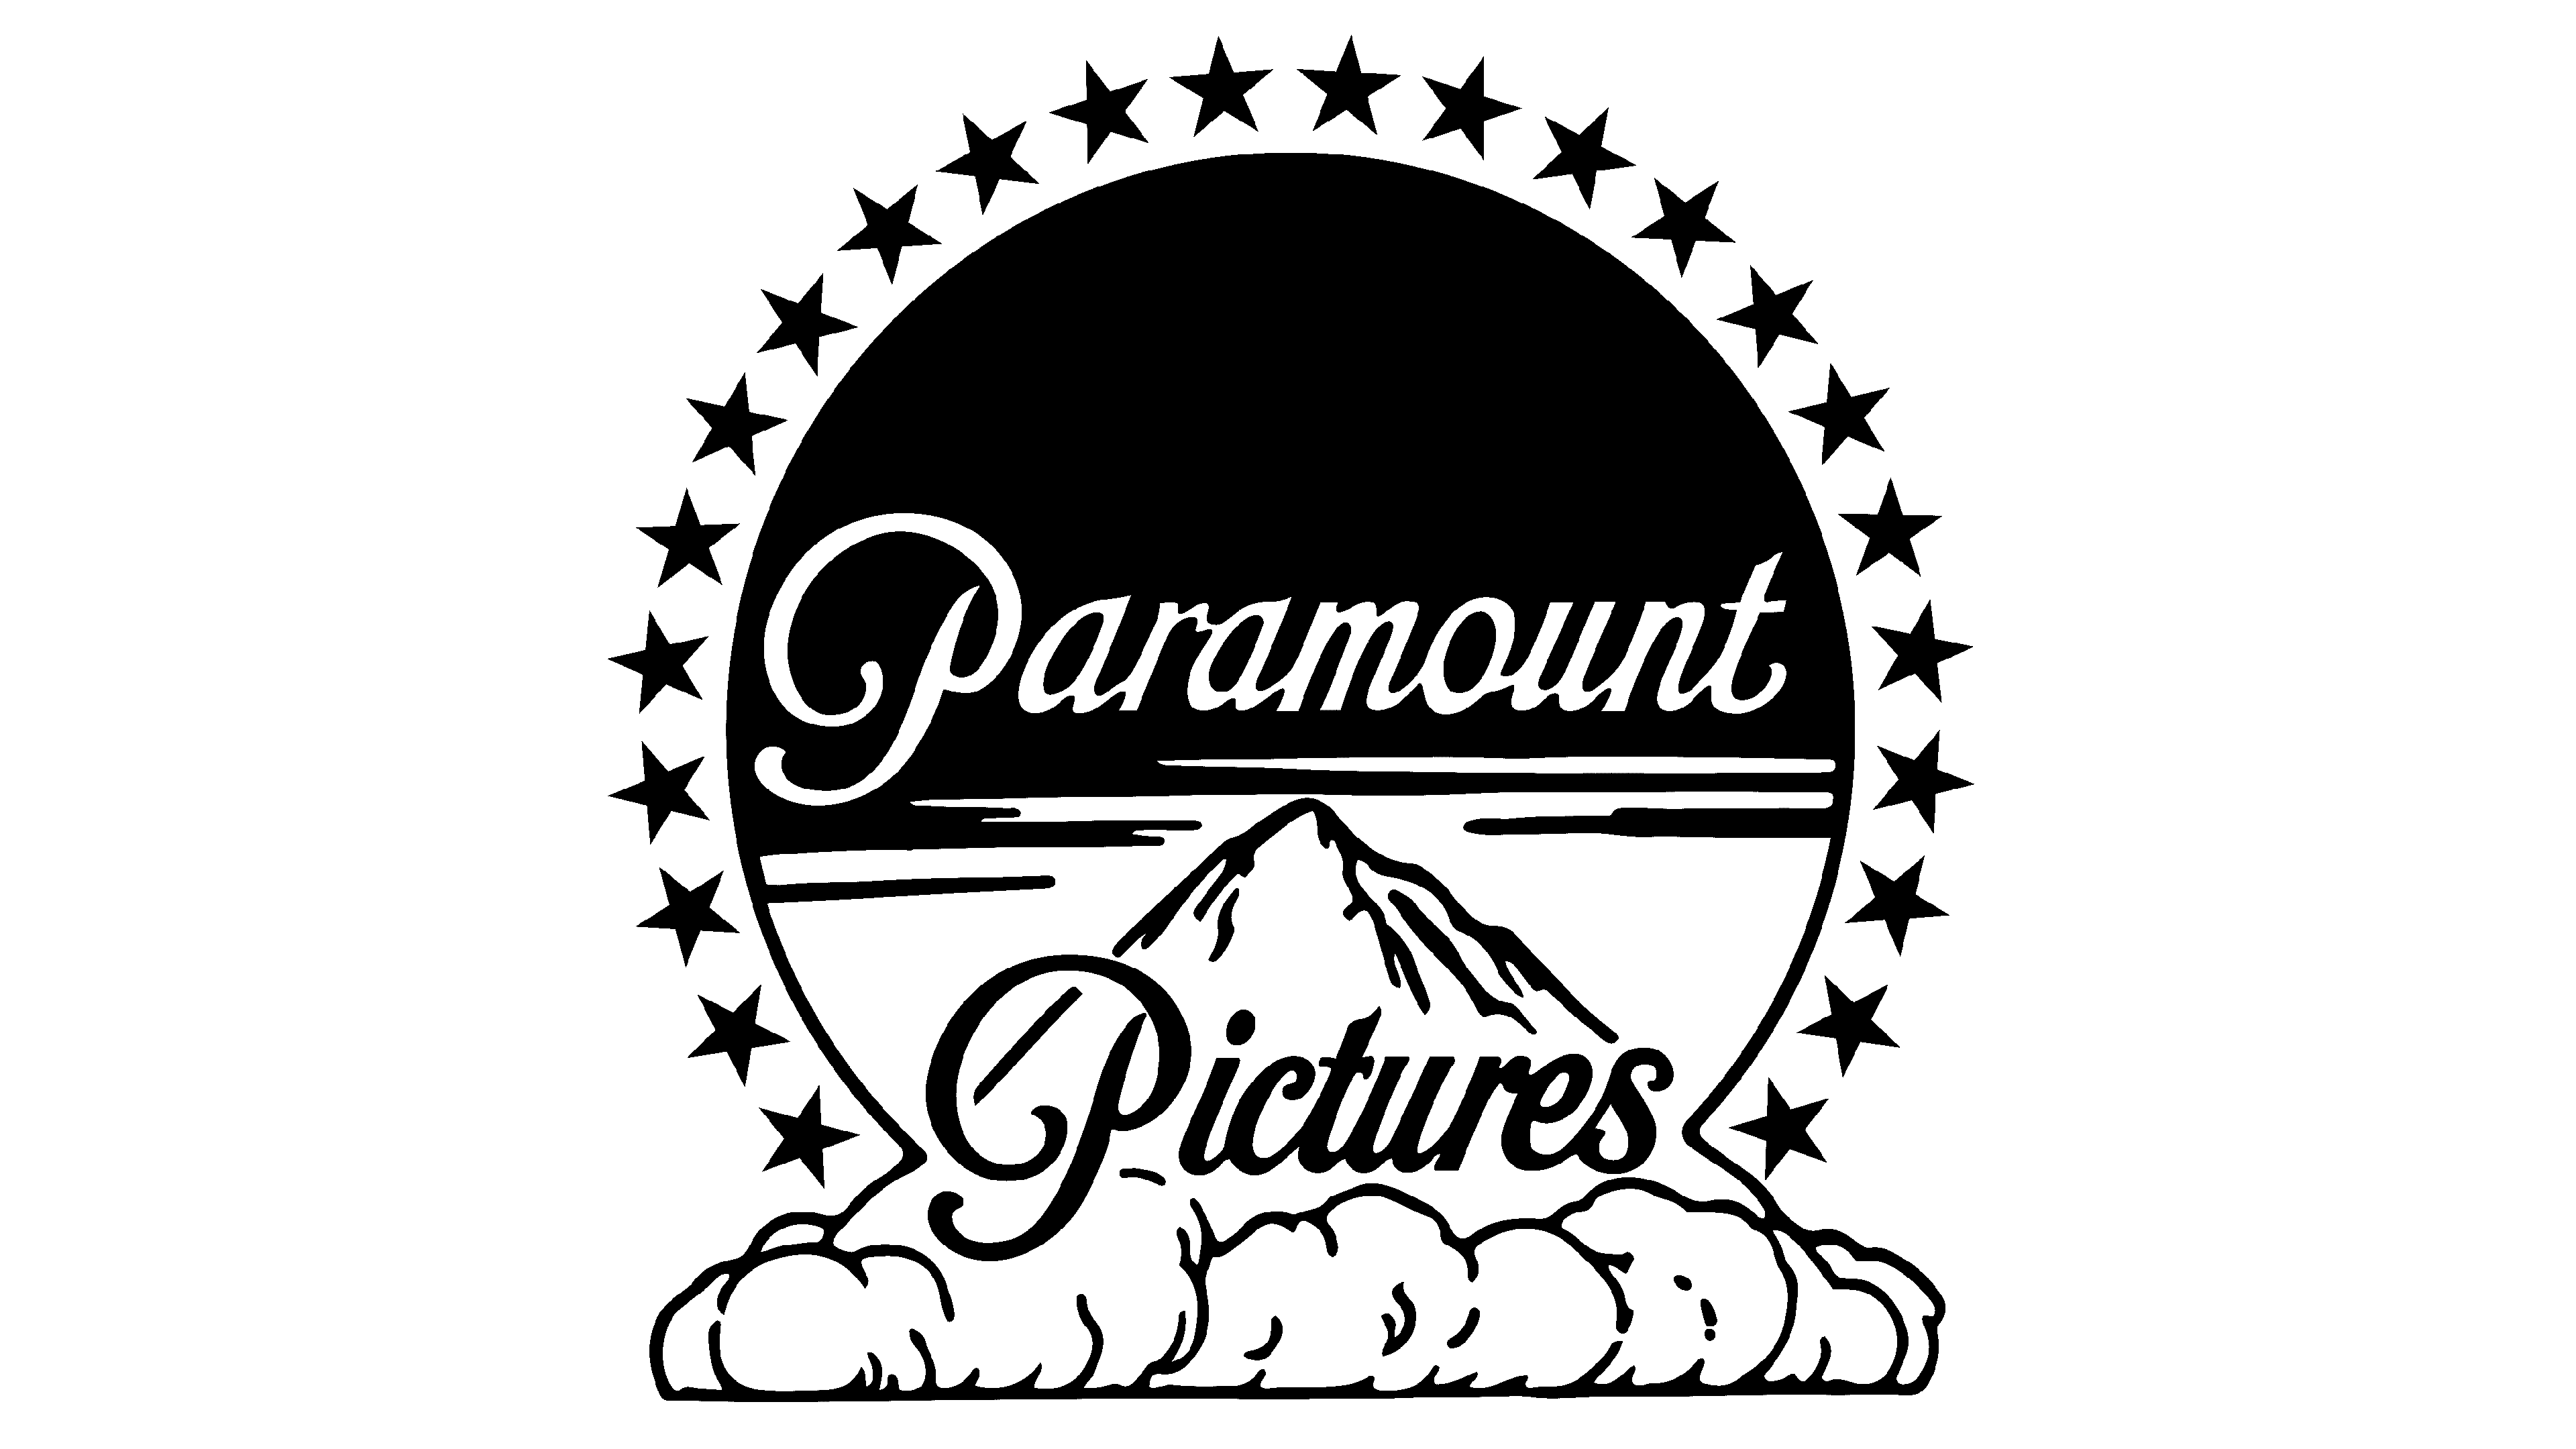 Кинокомпания pictures. Парамаунт логотип. Парамаунт Пикчерз логотип. Кинокомпания Paramount pictures. Эмблема кинокомпании Paramount.